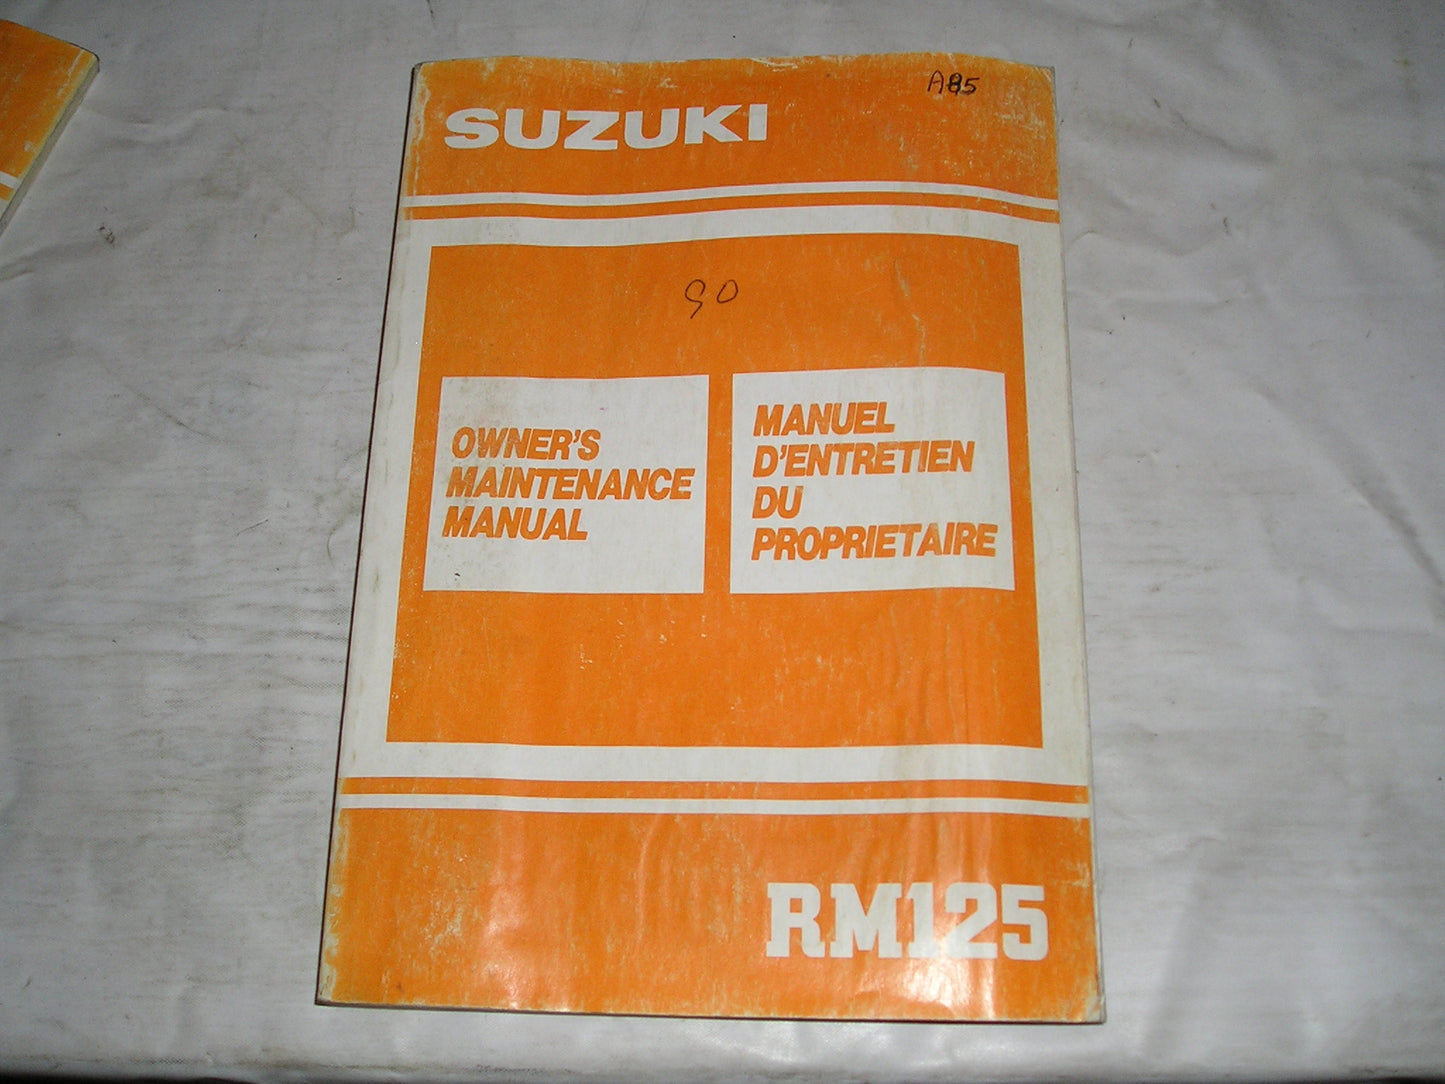 SUZUKI RM125 L 1990  Owner's Maintenance Manual  99011-27C51-01B  #A85